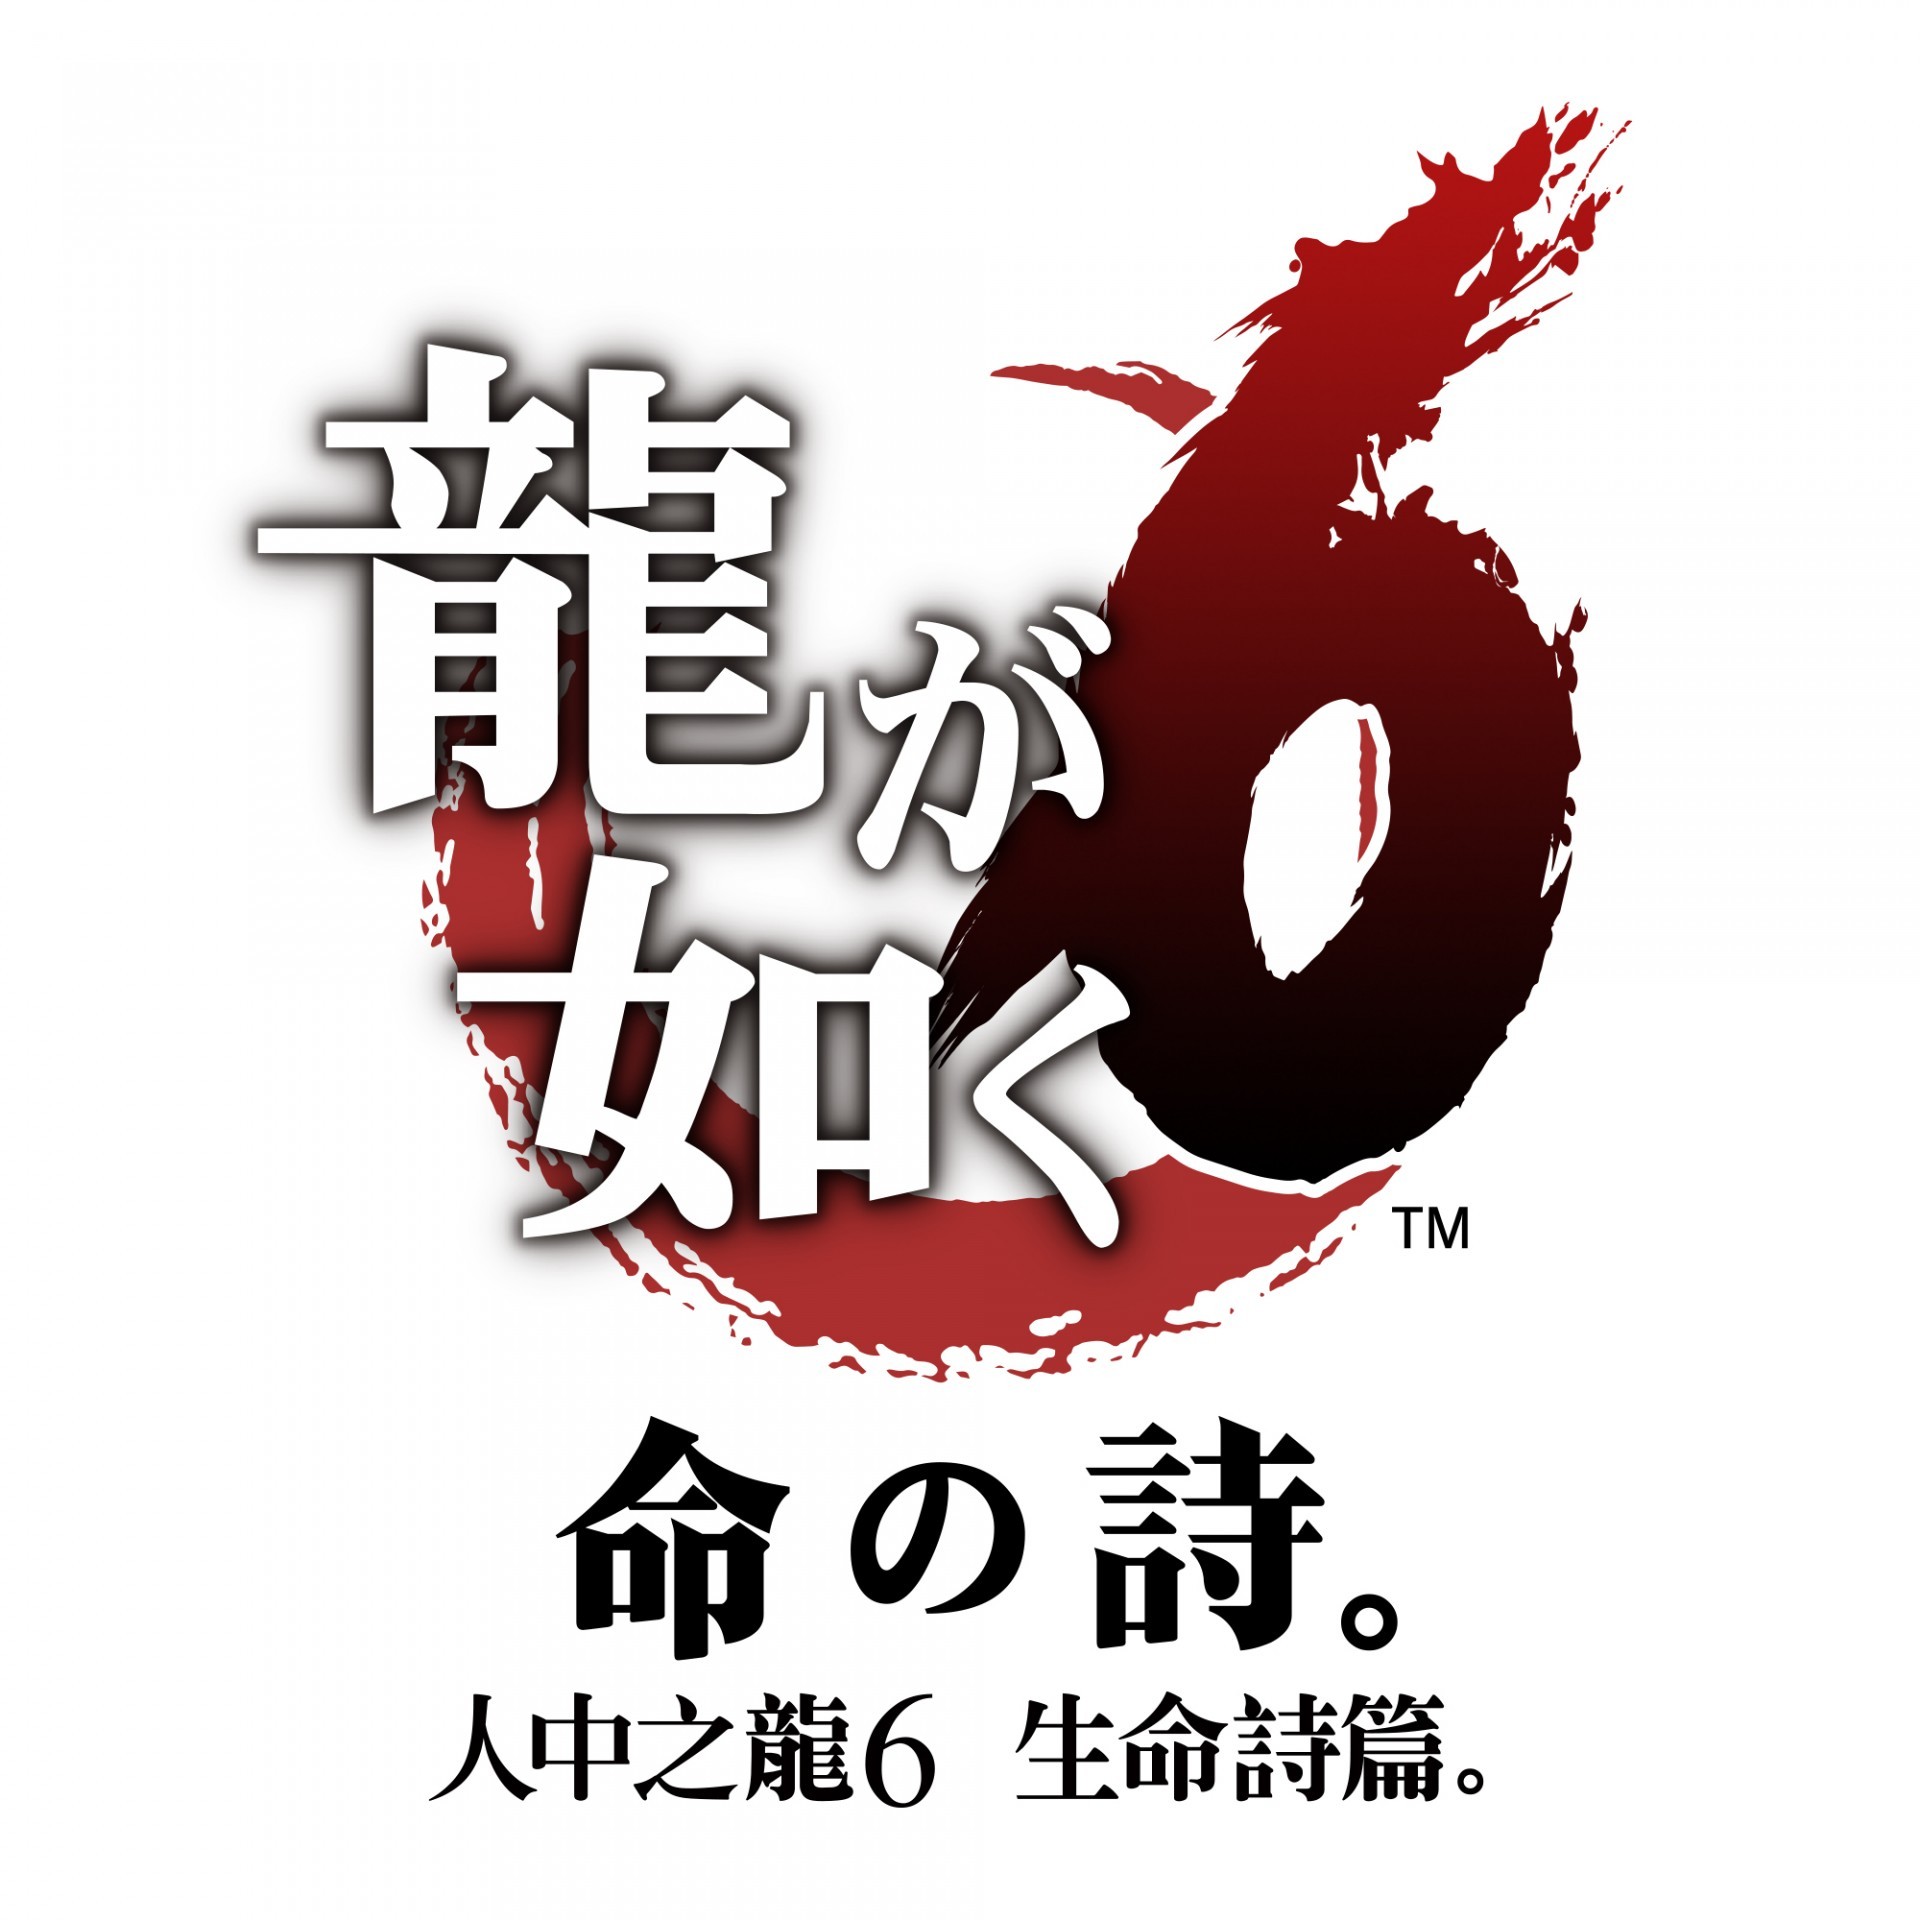 PS4《人中之龙 6 生命诗篇。》 繁体中文体验版已开放下载